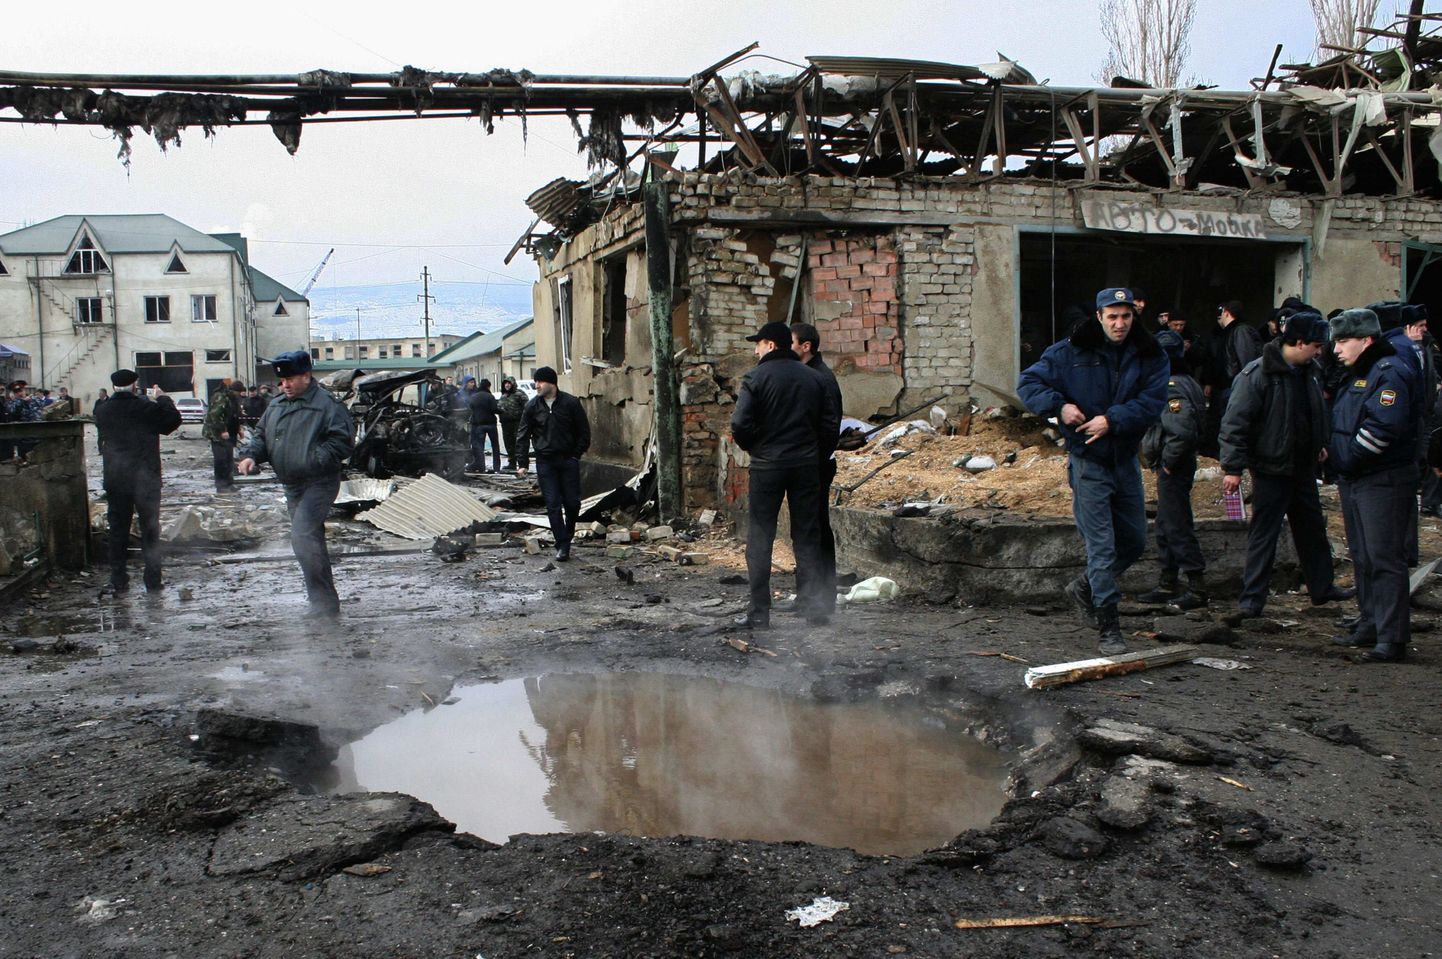 Rahutus Dagestanis ei ole plahvatused harulduseks. Pilt on tehtud 6. jaanuaril Mahhatškalas, kus enesetapja ründas miilitsajaoskonda.